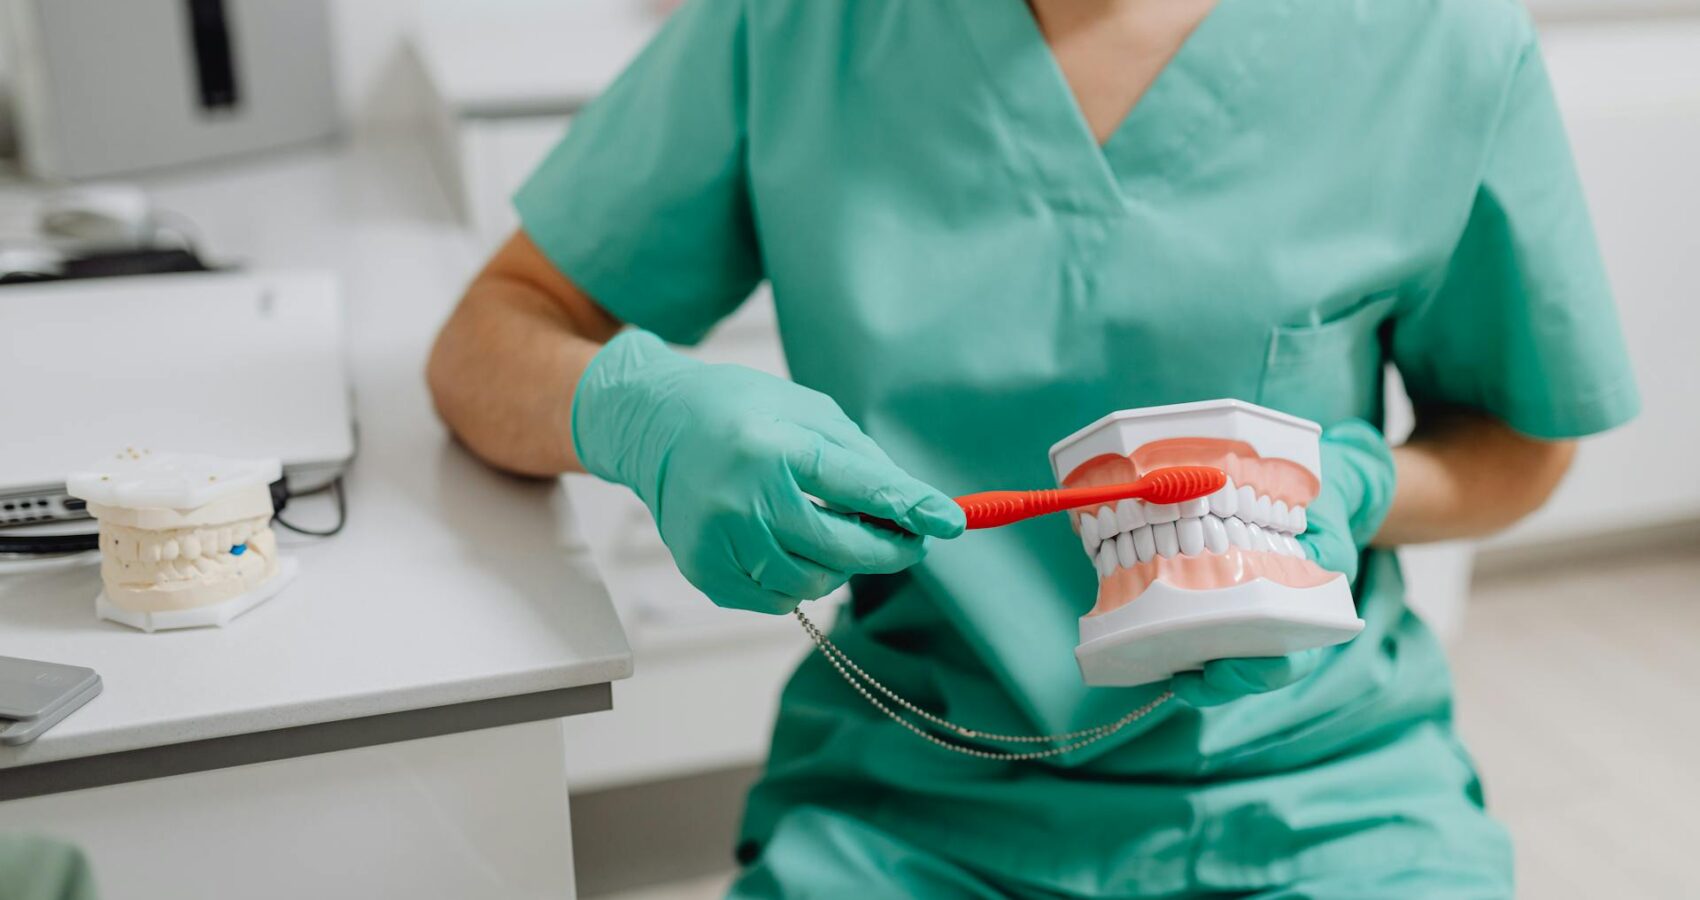 Nadwrażliwość zębów – co to jest i jakie są przyczyny? Leczenie nadwrażliwości zębów